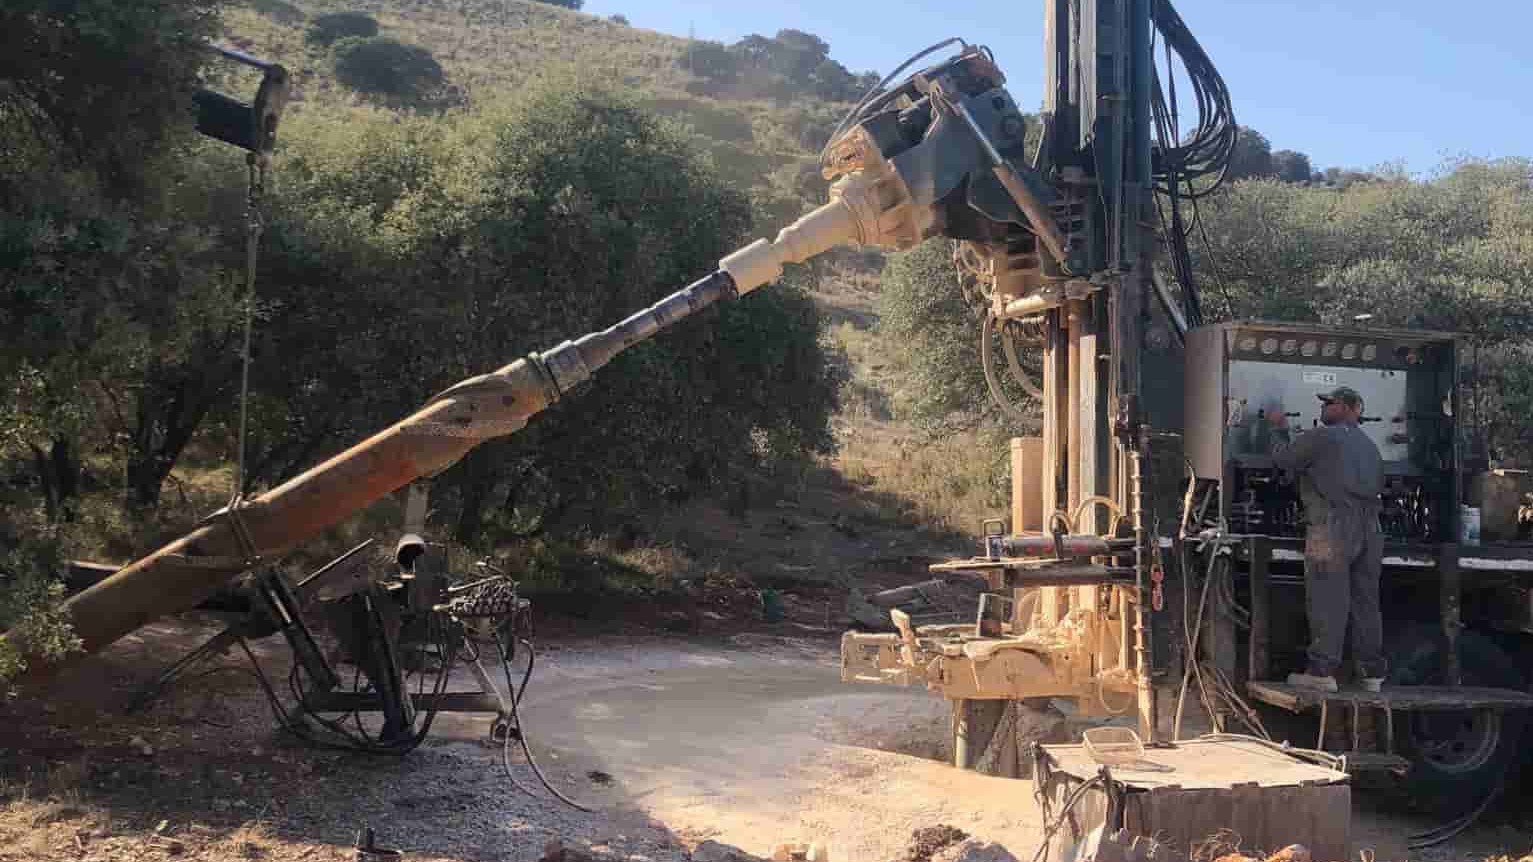 Maquinaria para la construcción de un nuevo pozo en Archidona